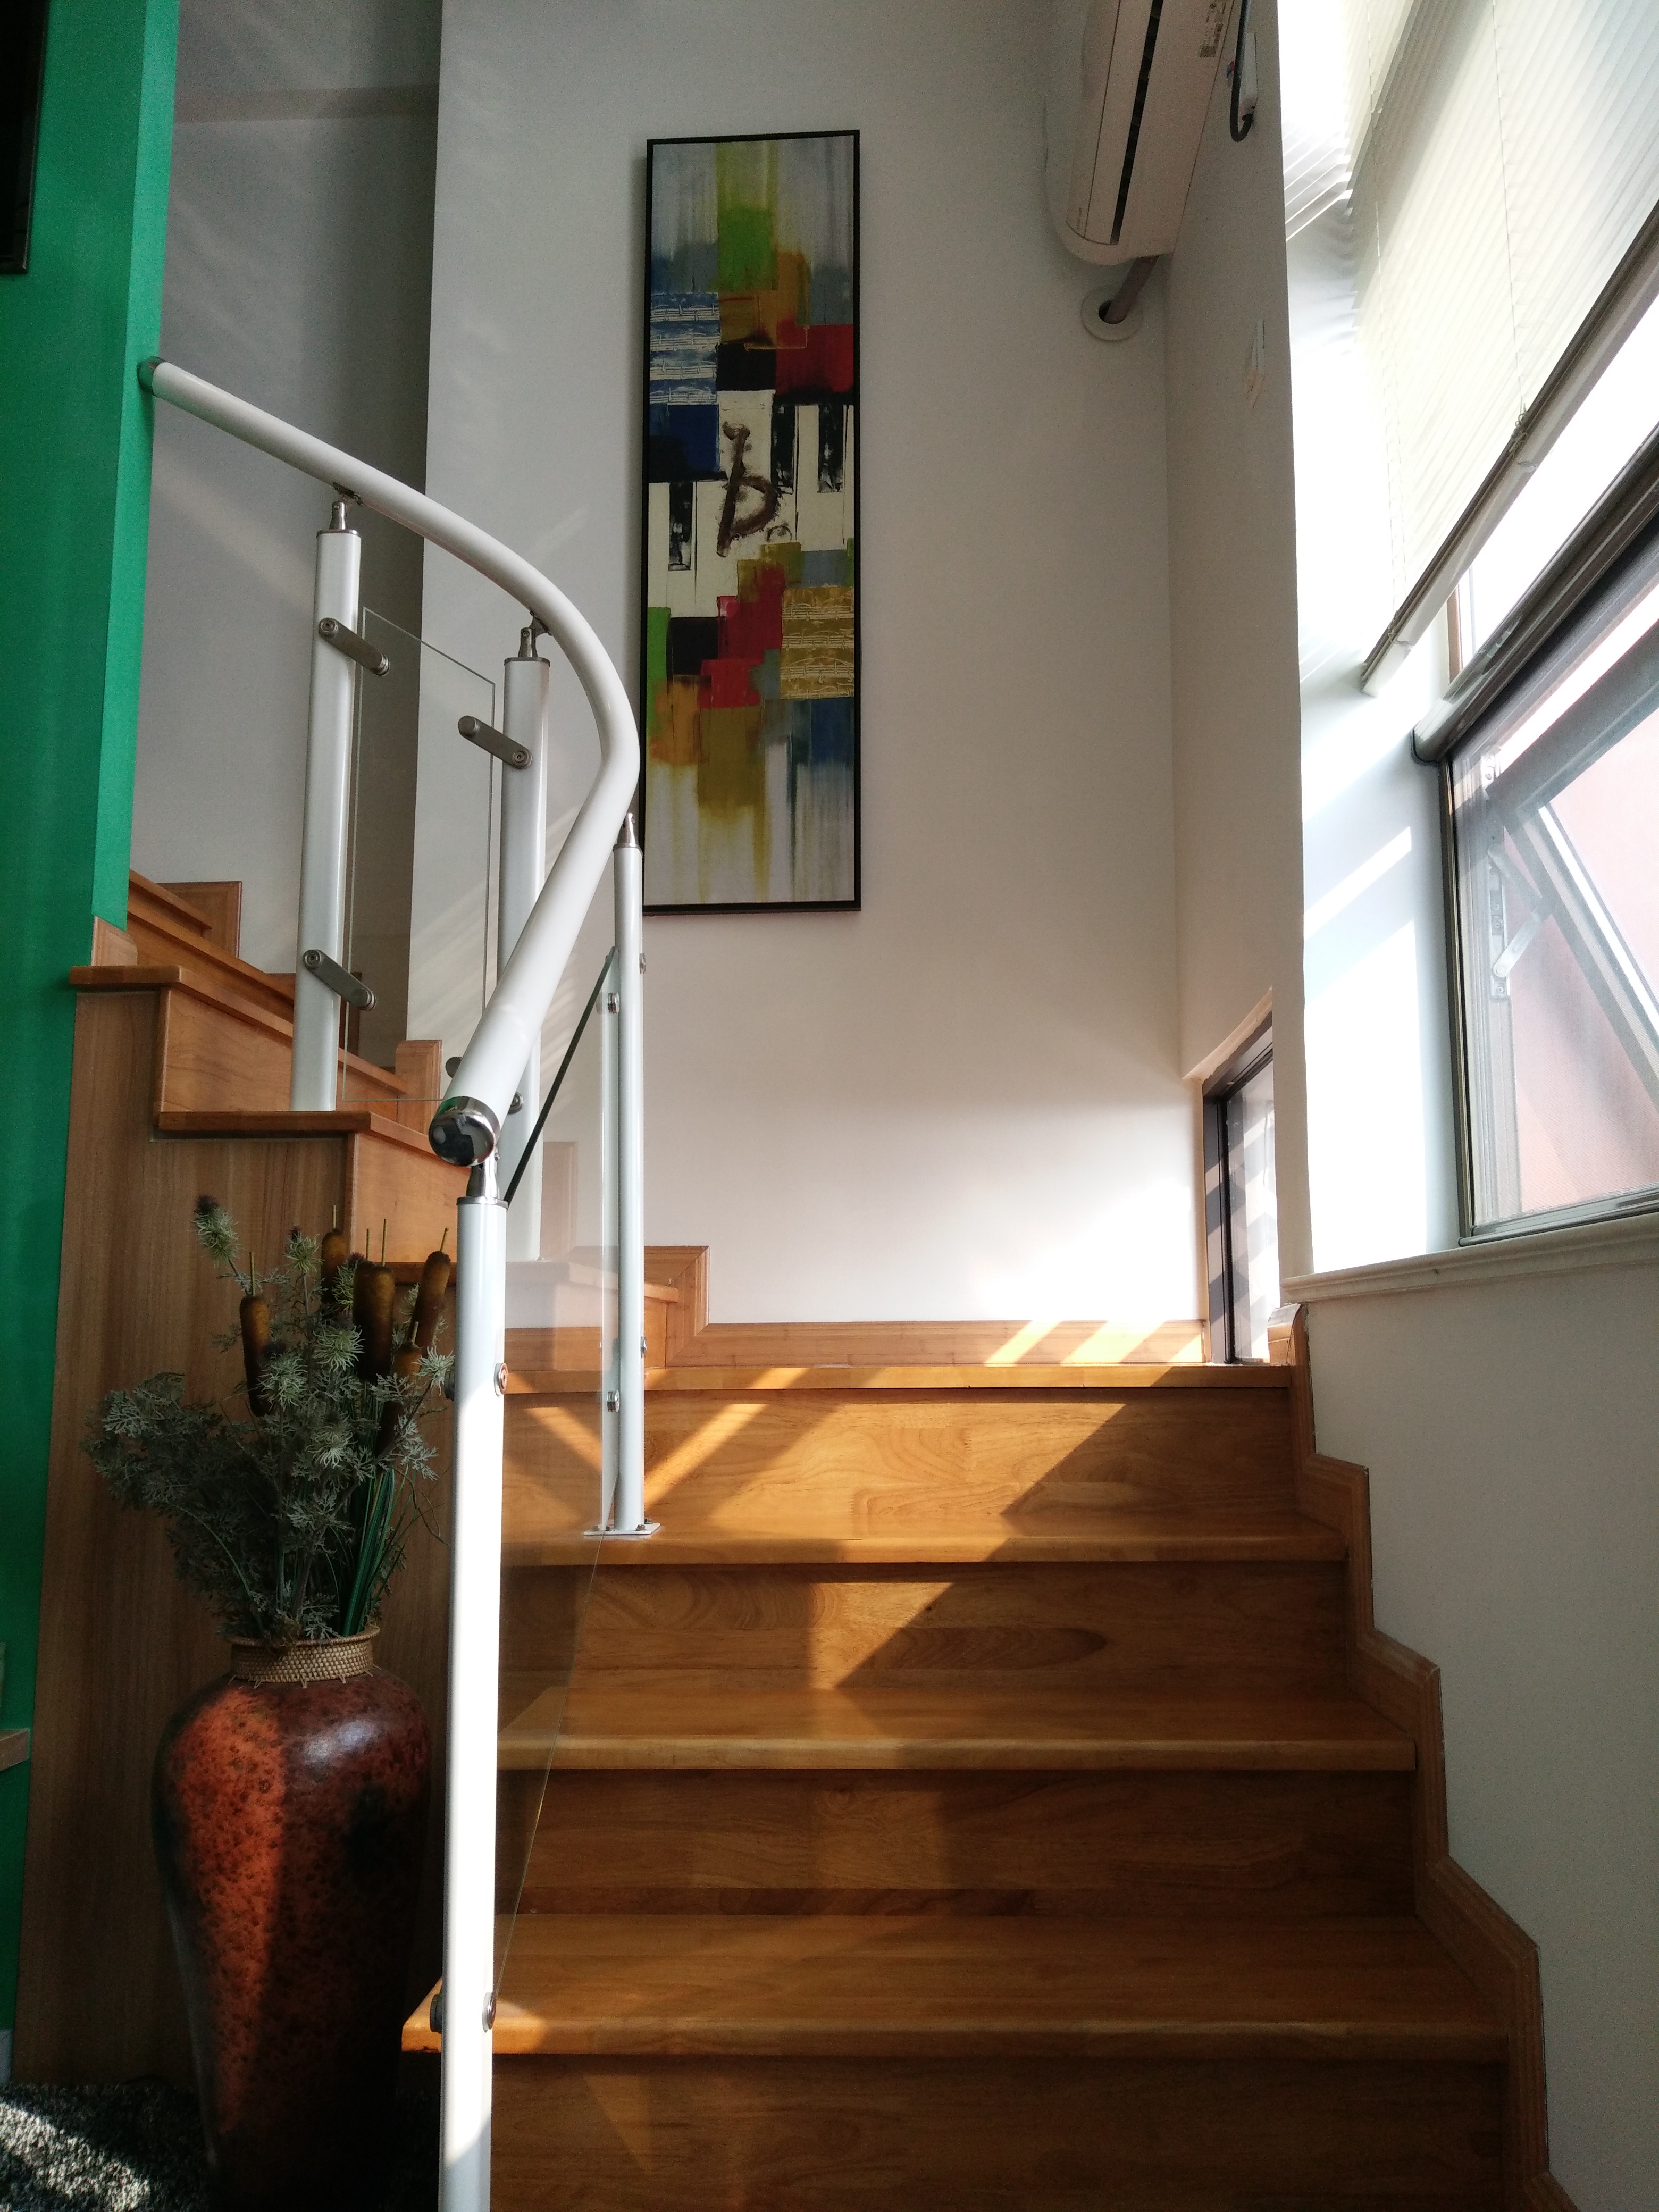 简约 混搭 小资 白领 楼梯图片来自赢和国际设计在悦城GOHO的分享